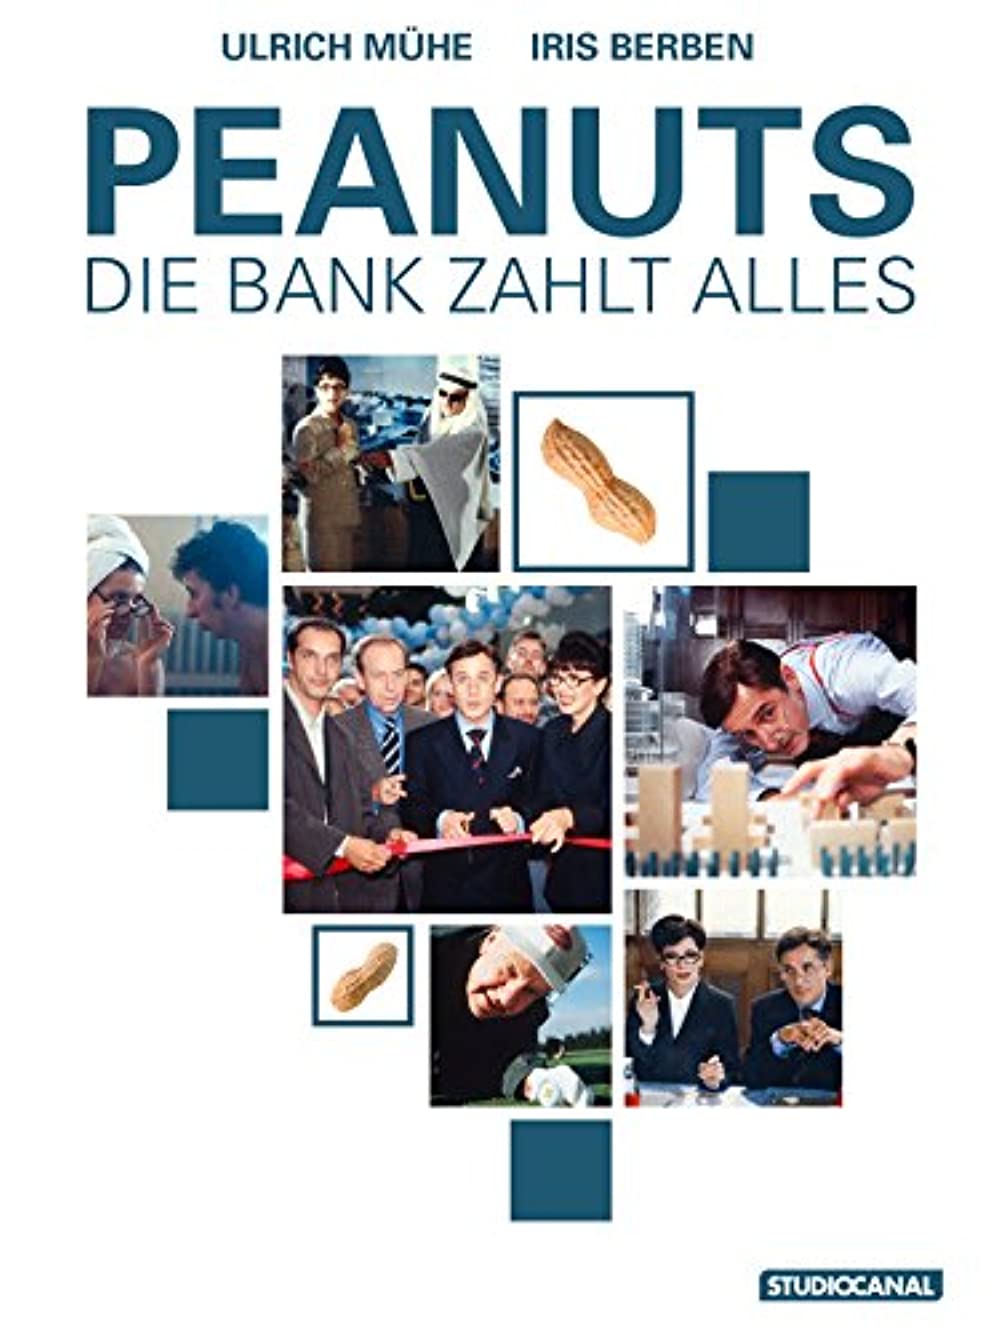 Filmbeschreibung zu Peanuts - Die Bank zahlt alles